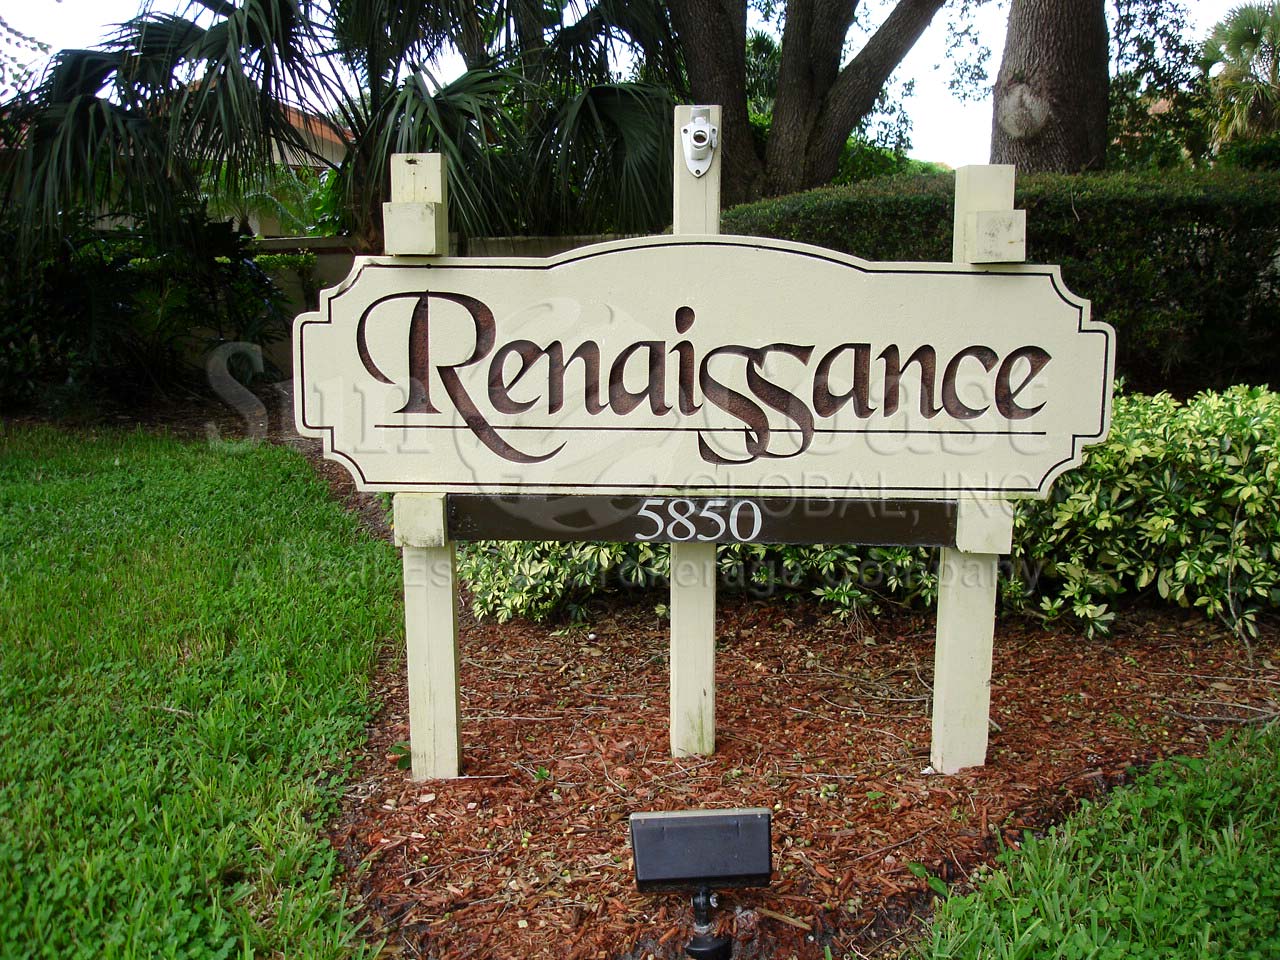 Renaissance Signage